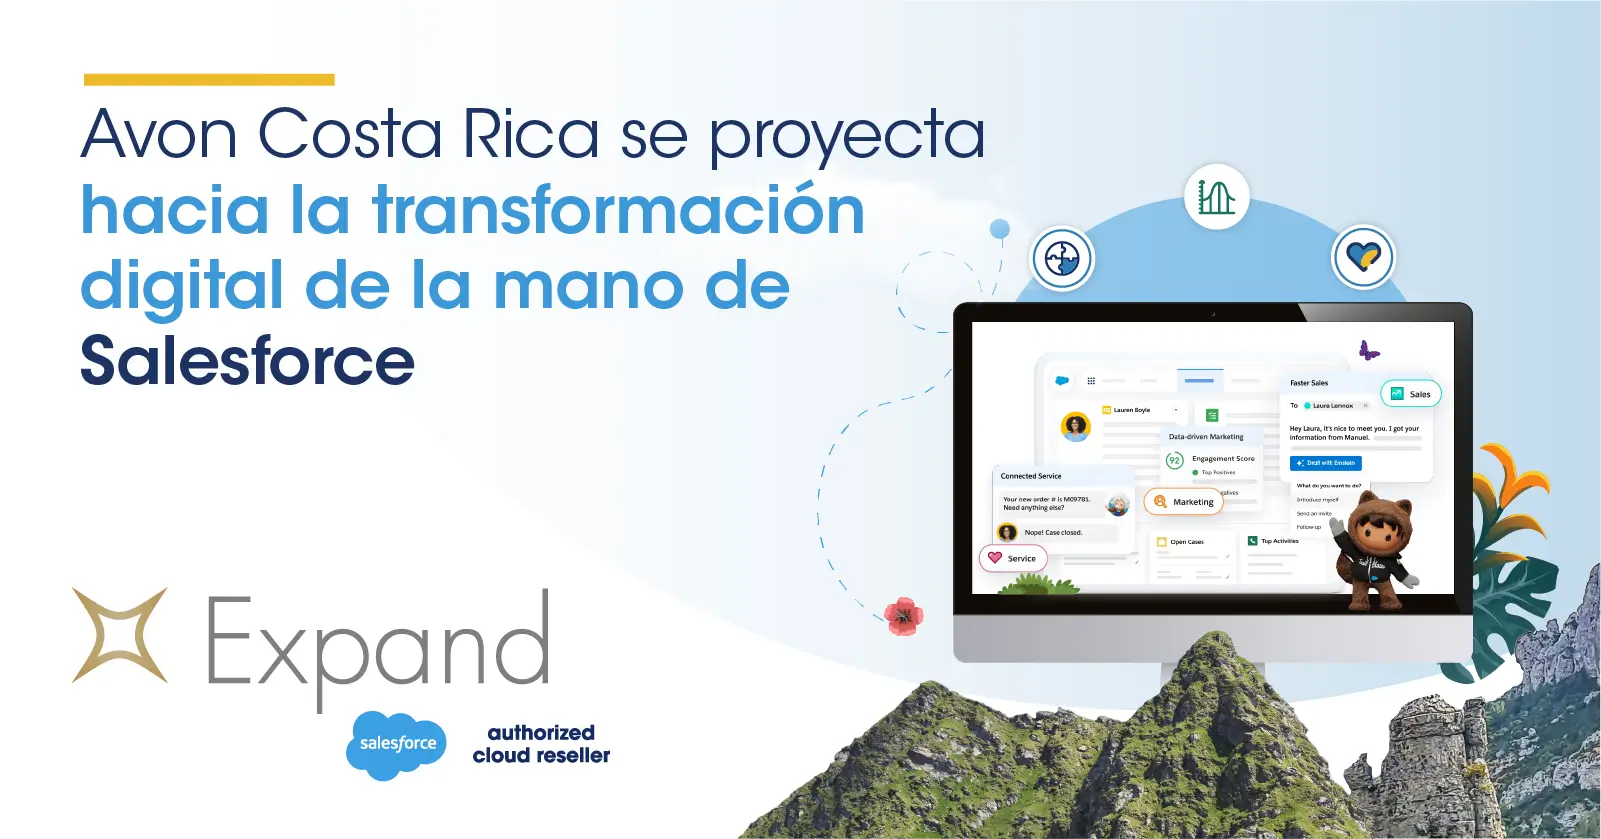 Avon Costa Rica se proyecta hacia la transformación digital de la mano de Salesforce